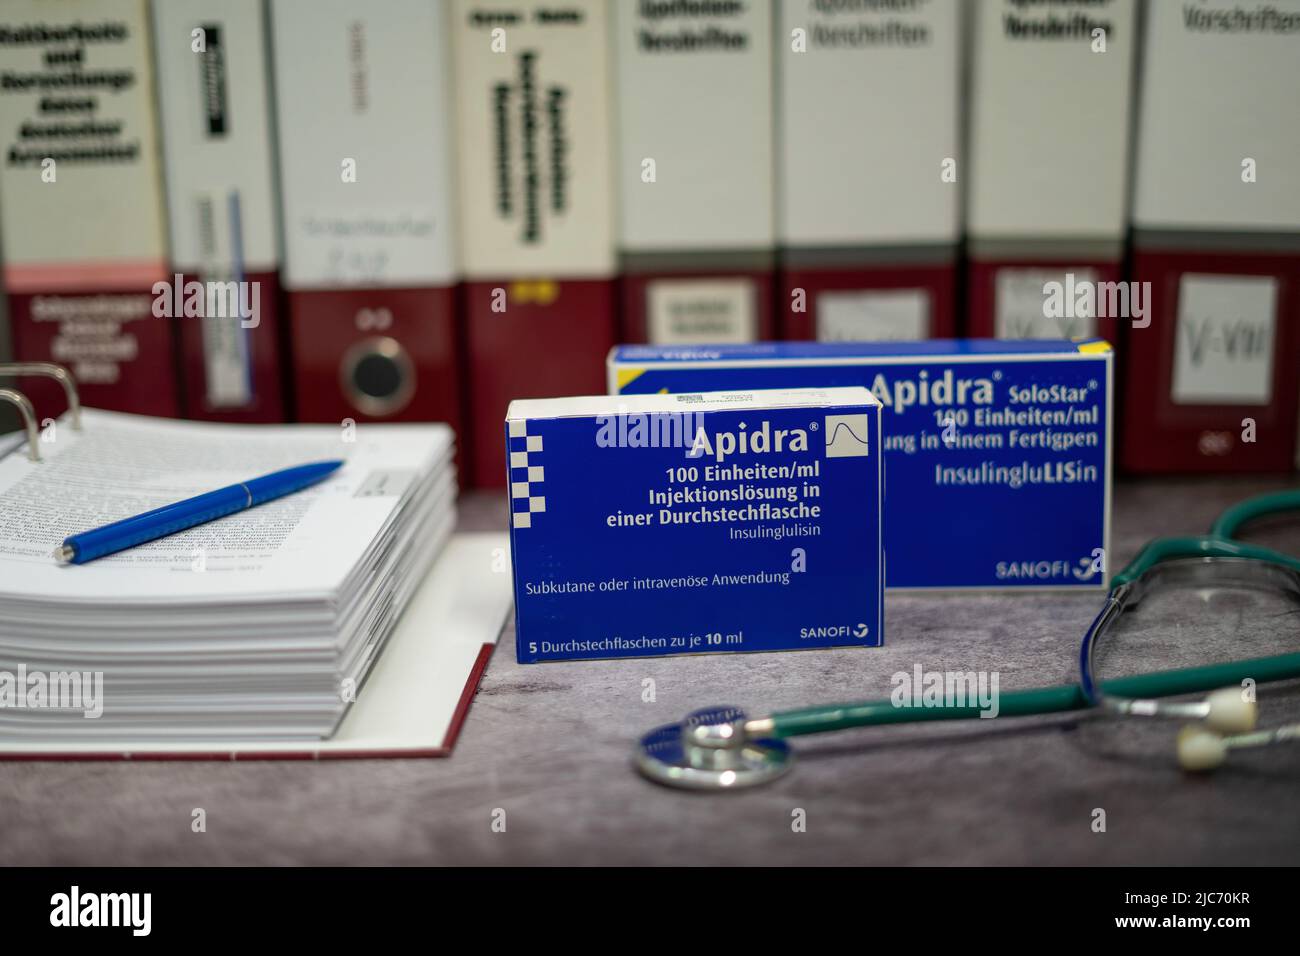 Apidra-Medikament, das schnell wirkendes Insulin zur Behandlung von Diabetes mellitus enthält, auf einem Tisch und im Hintergrund verschiedene medizinische Bücher. Stockfoto